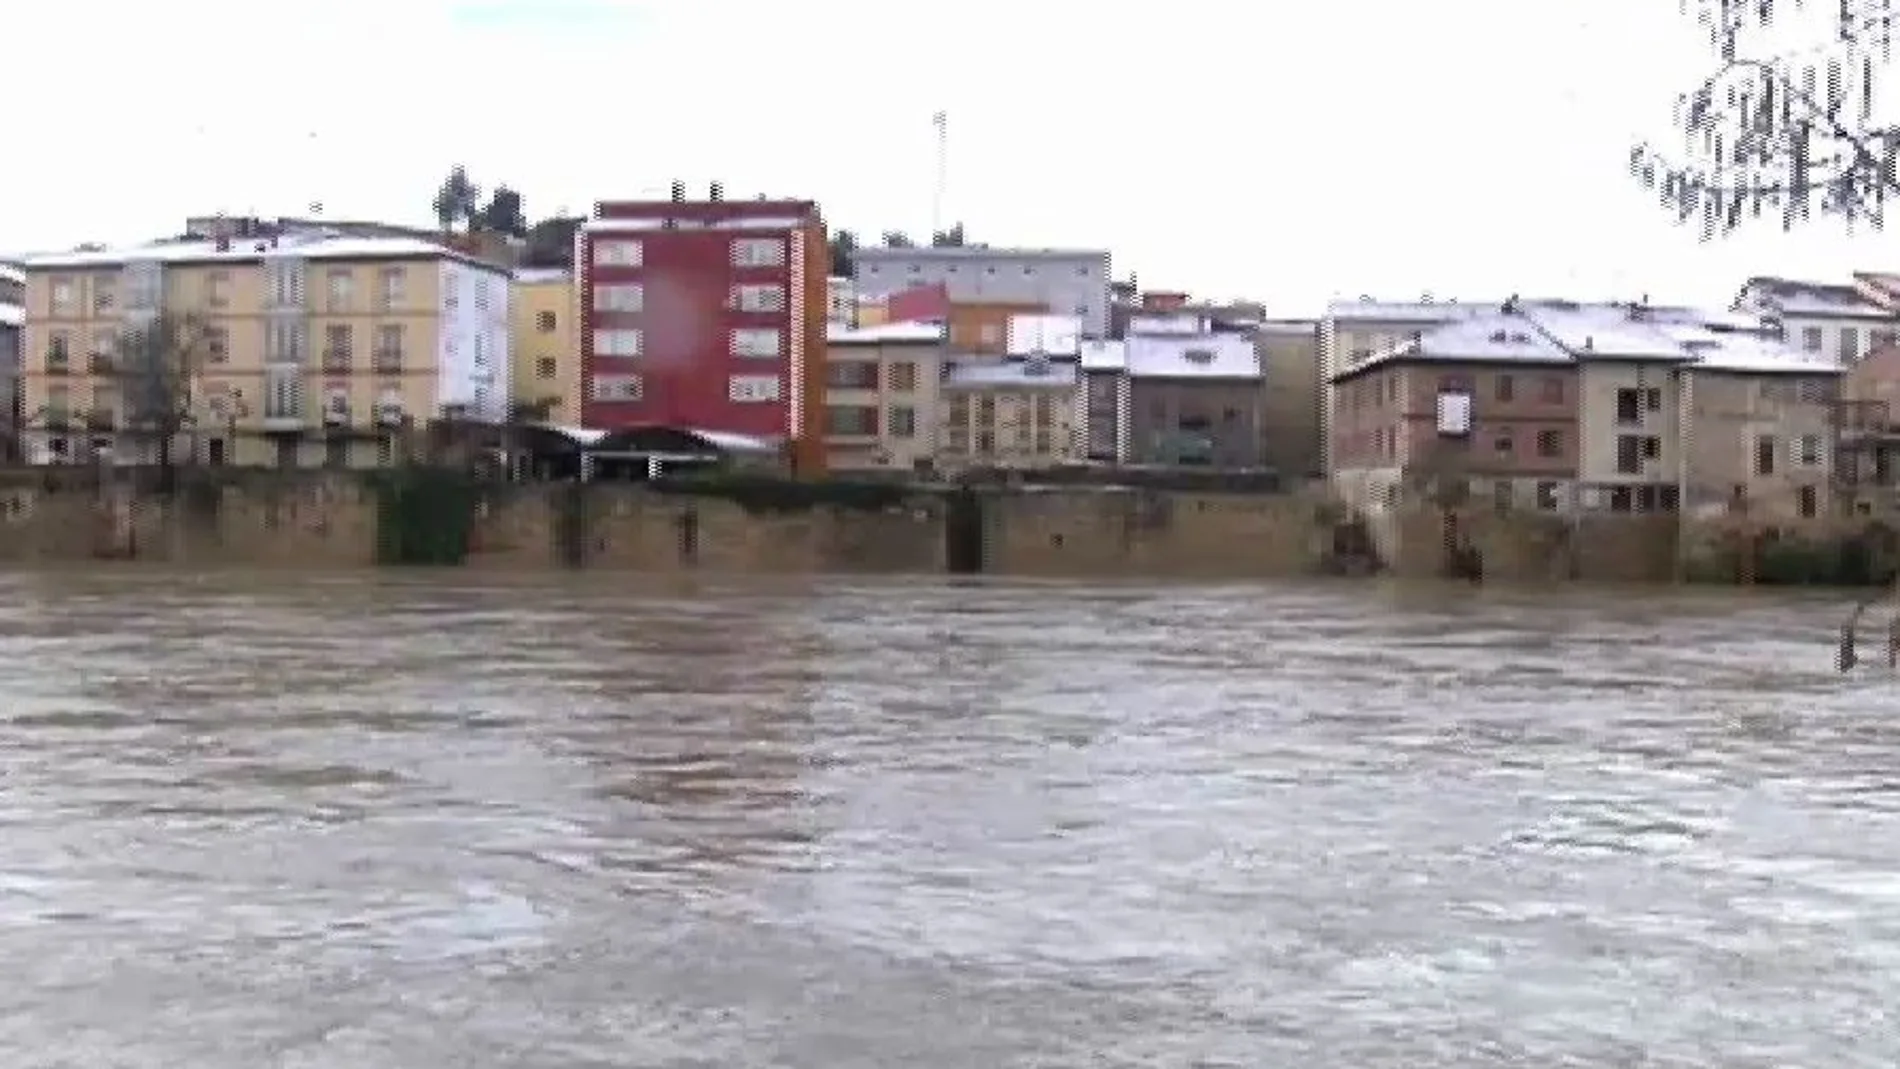 En Miranda de Ebro el río se ha desbordado anegando gran parte de la zona baja del municipio